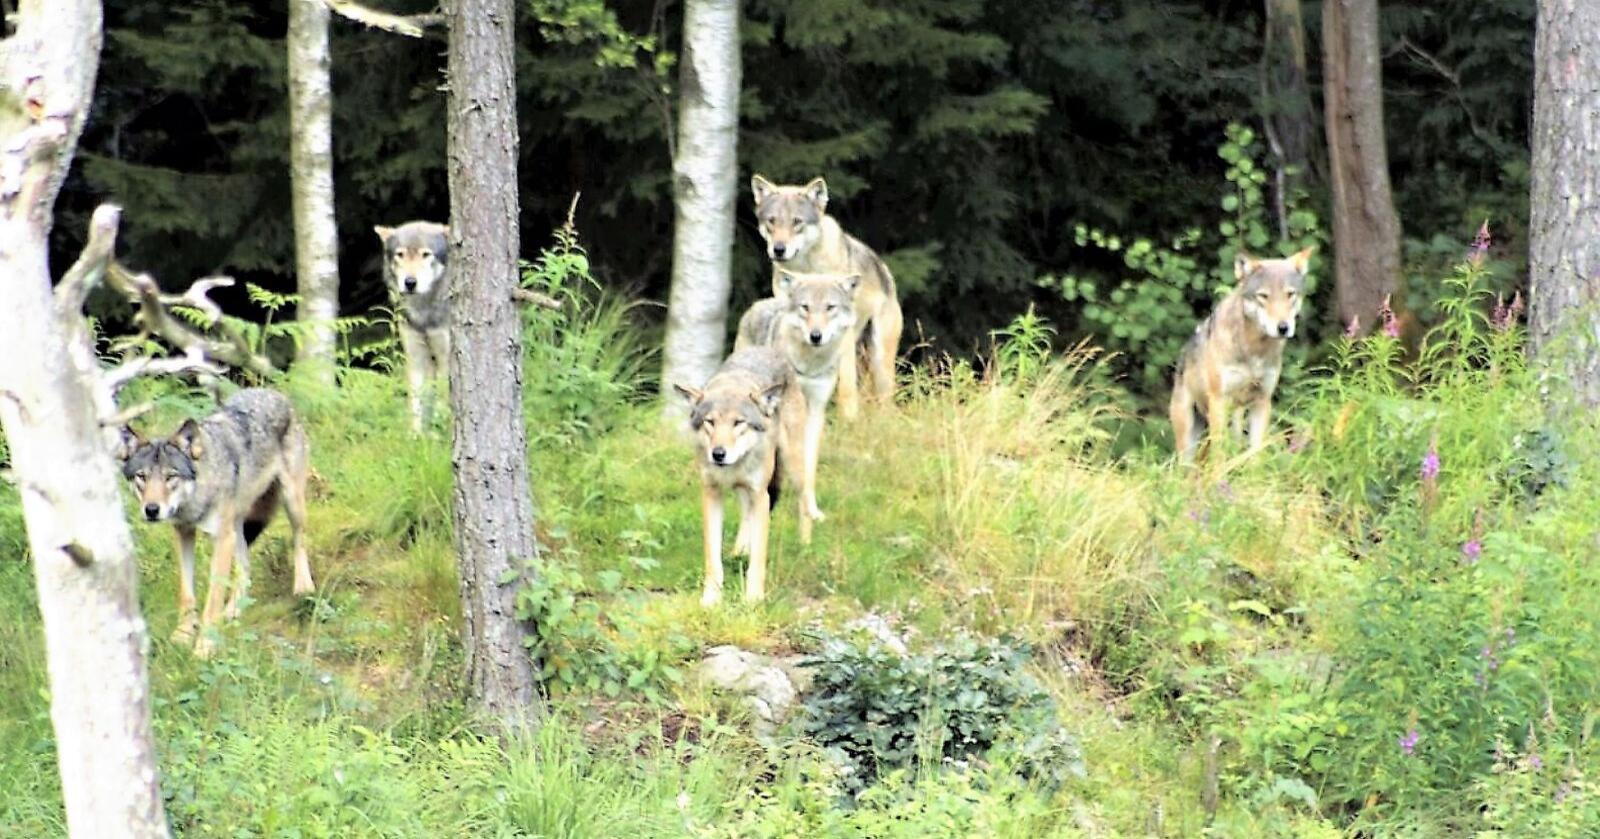 Den svenske regjeringa vedtok nylig å starte en prosess for å redusere ulvestammen i landet til ned mot 175 individ. Riksdagen ønsker også et tettere samarbeid med Norge om forvaltningen av den skandinaviske ulvestammen. Foto: Mostphotos